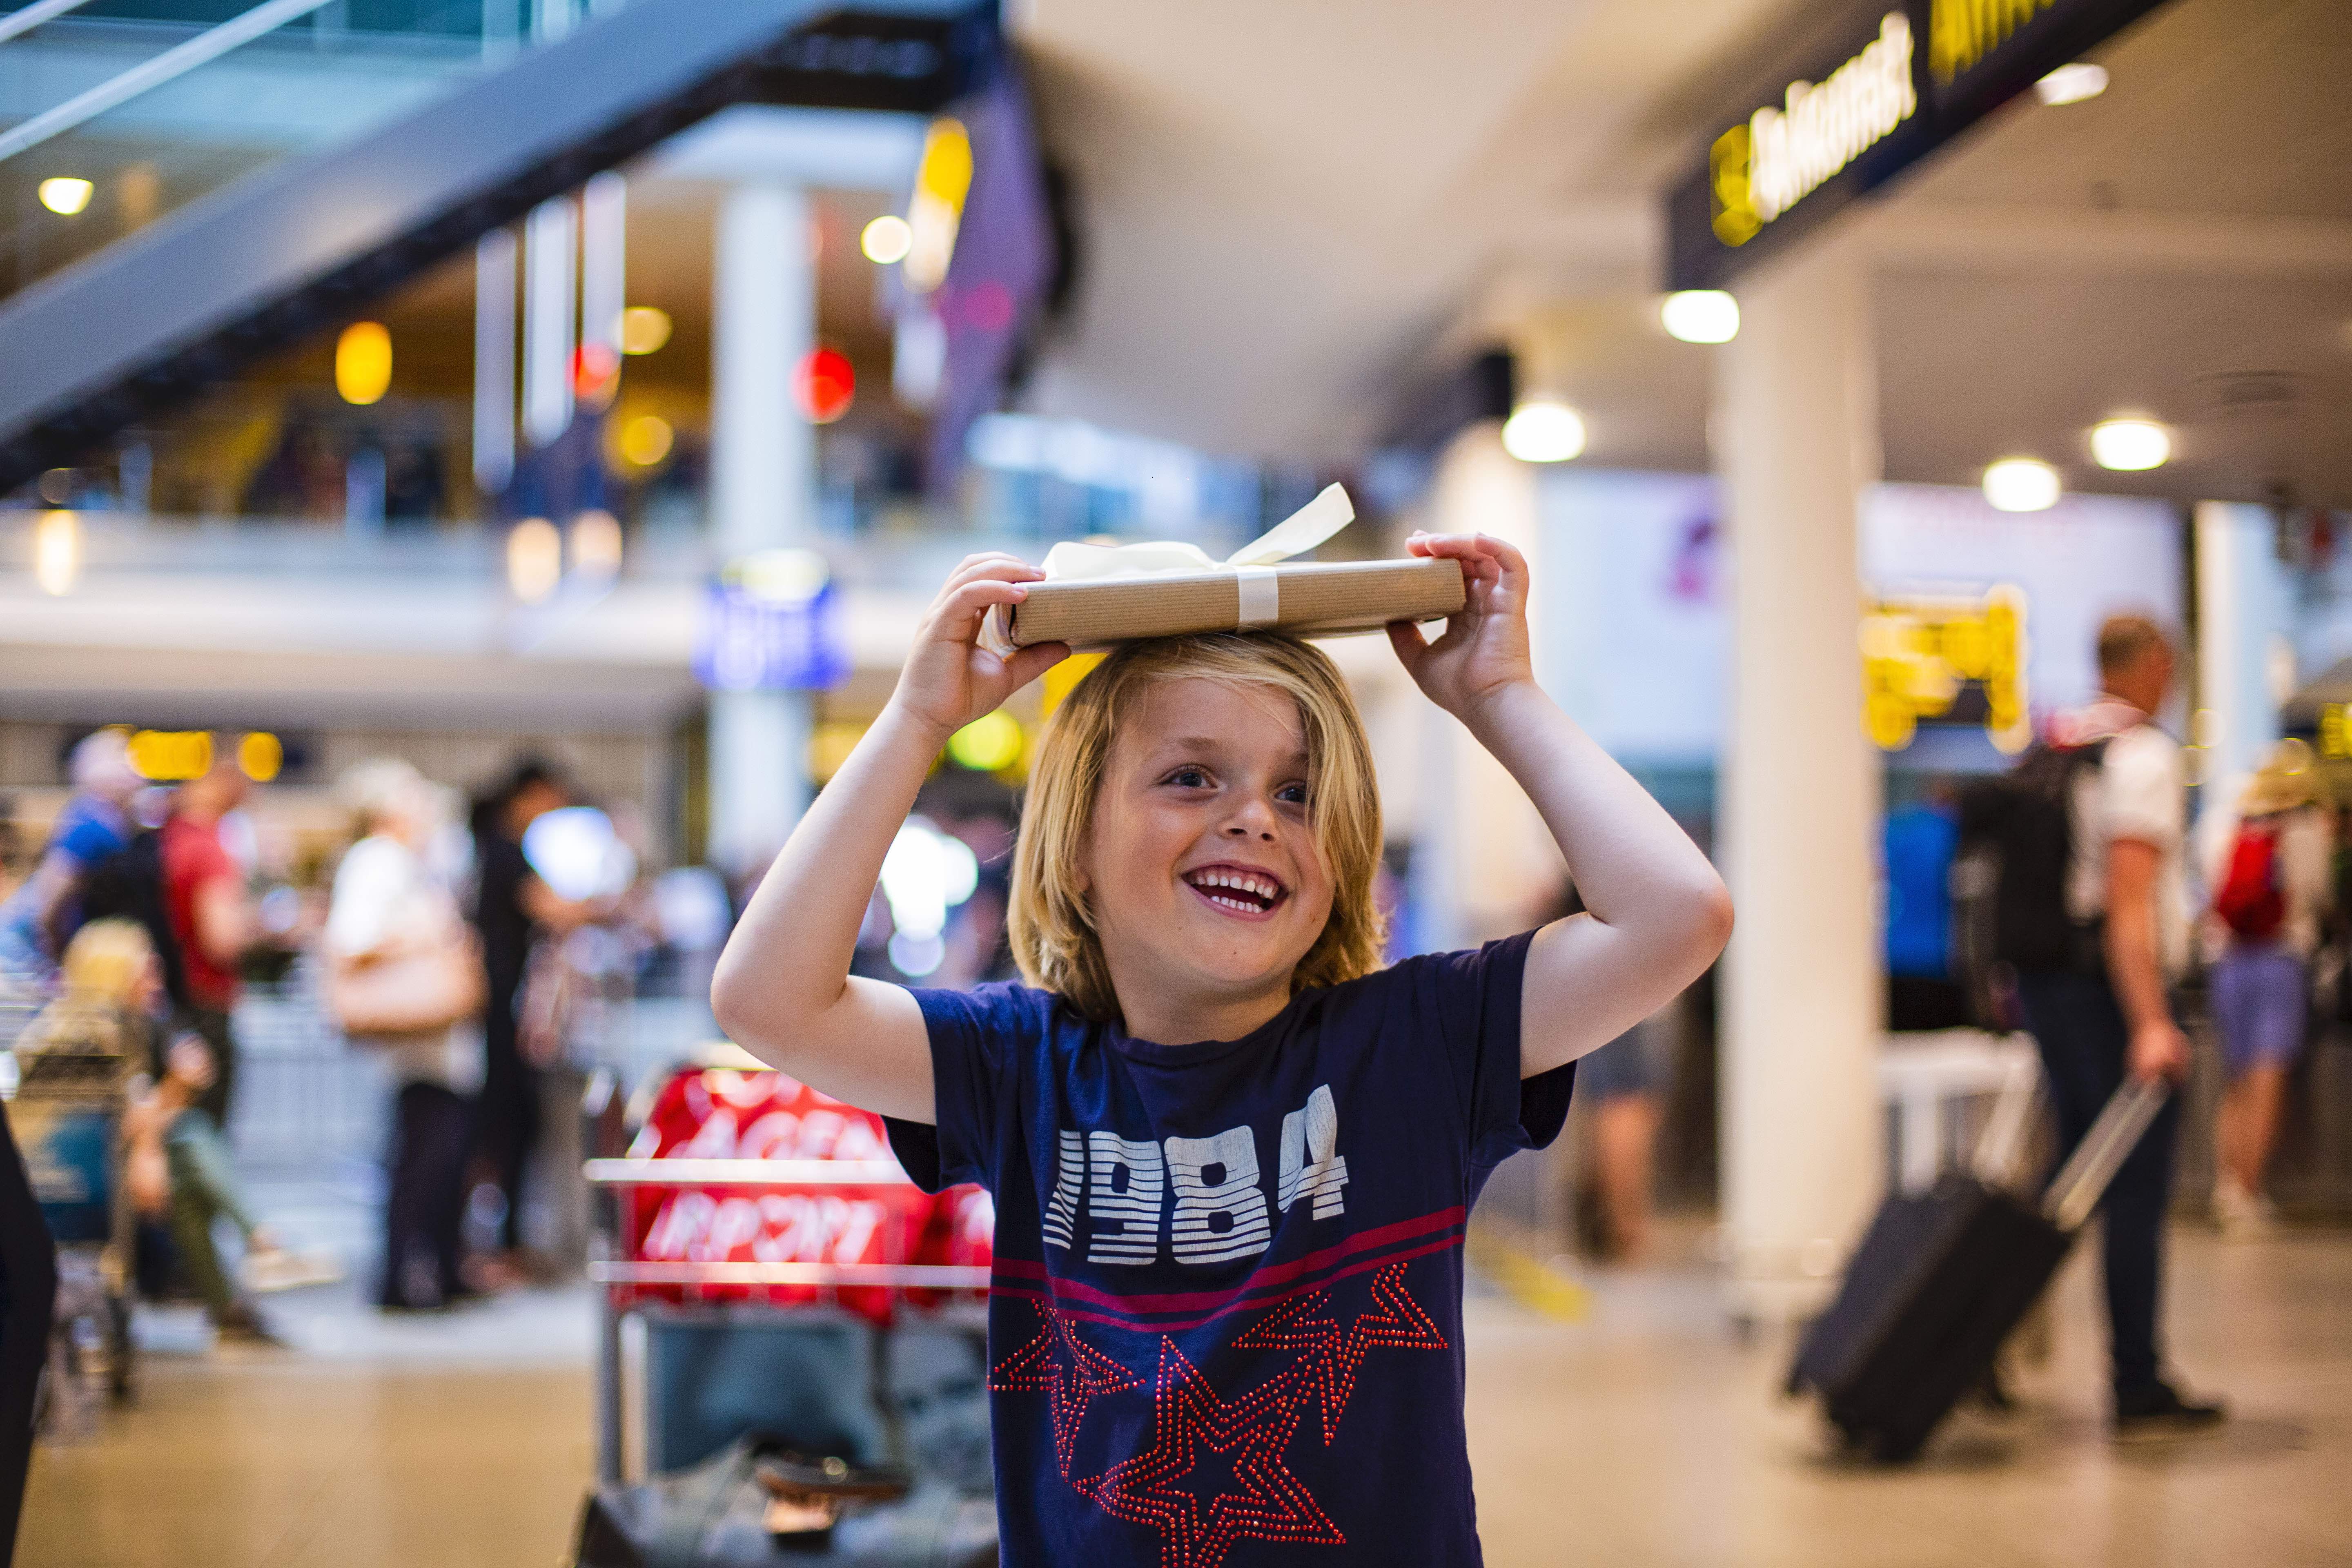 Fellow trend Gå en tur Rejsetip: Få en god oplevelse i lufthavnen med børn - ALT.dk